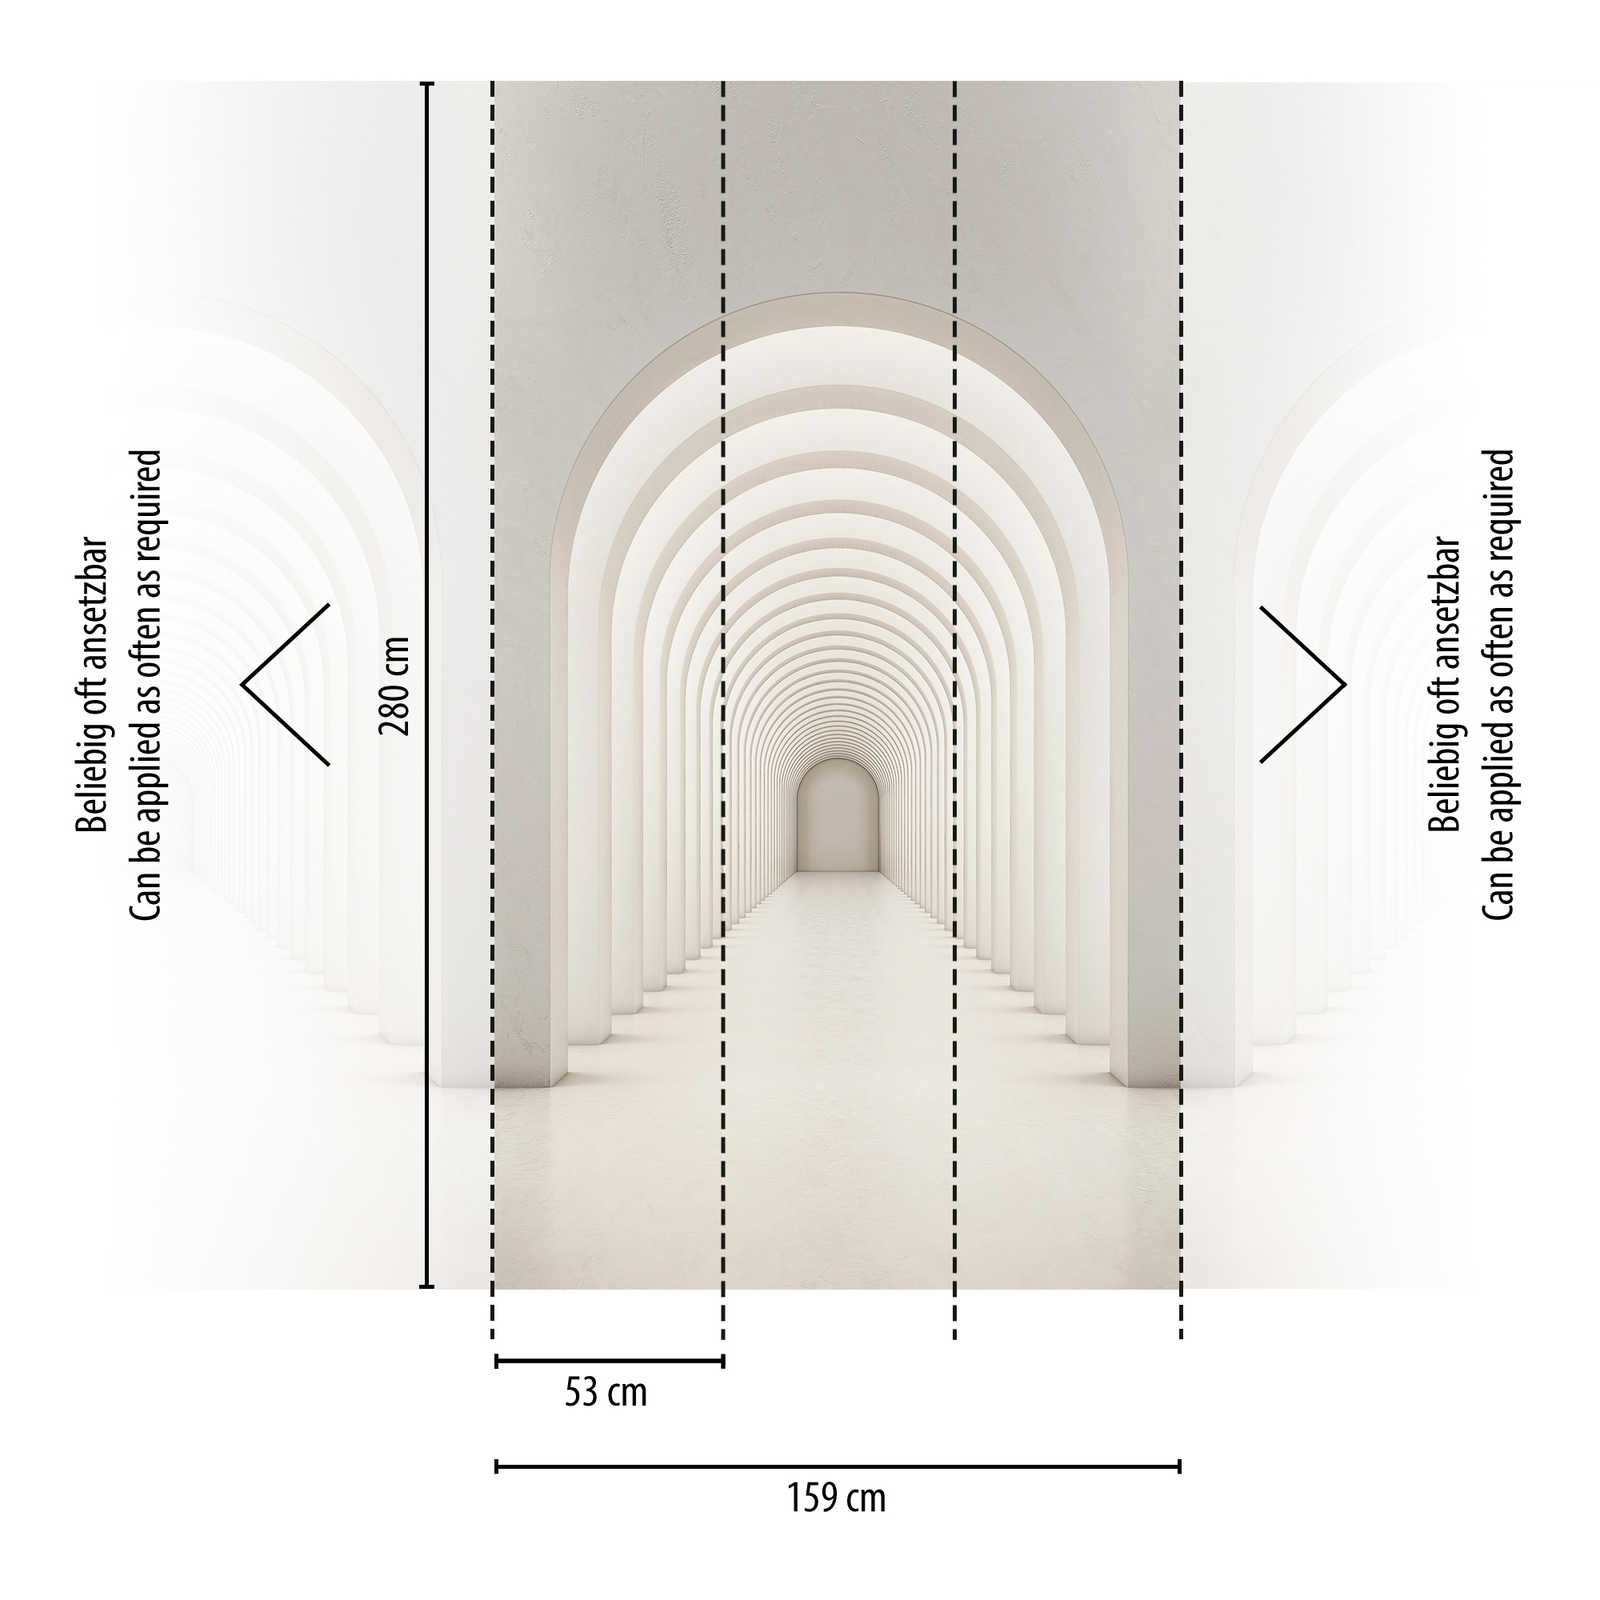             Tapeten-Neuheit – 3D Motivtapete Rundbogen moderne Architektur
        